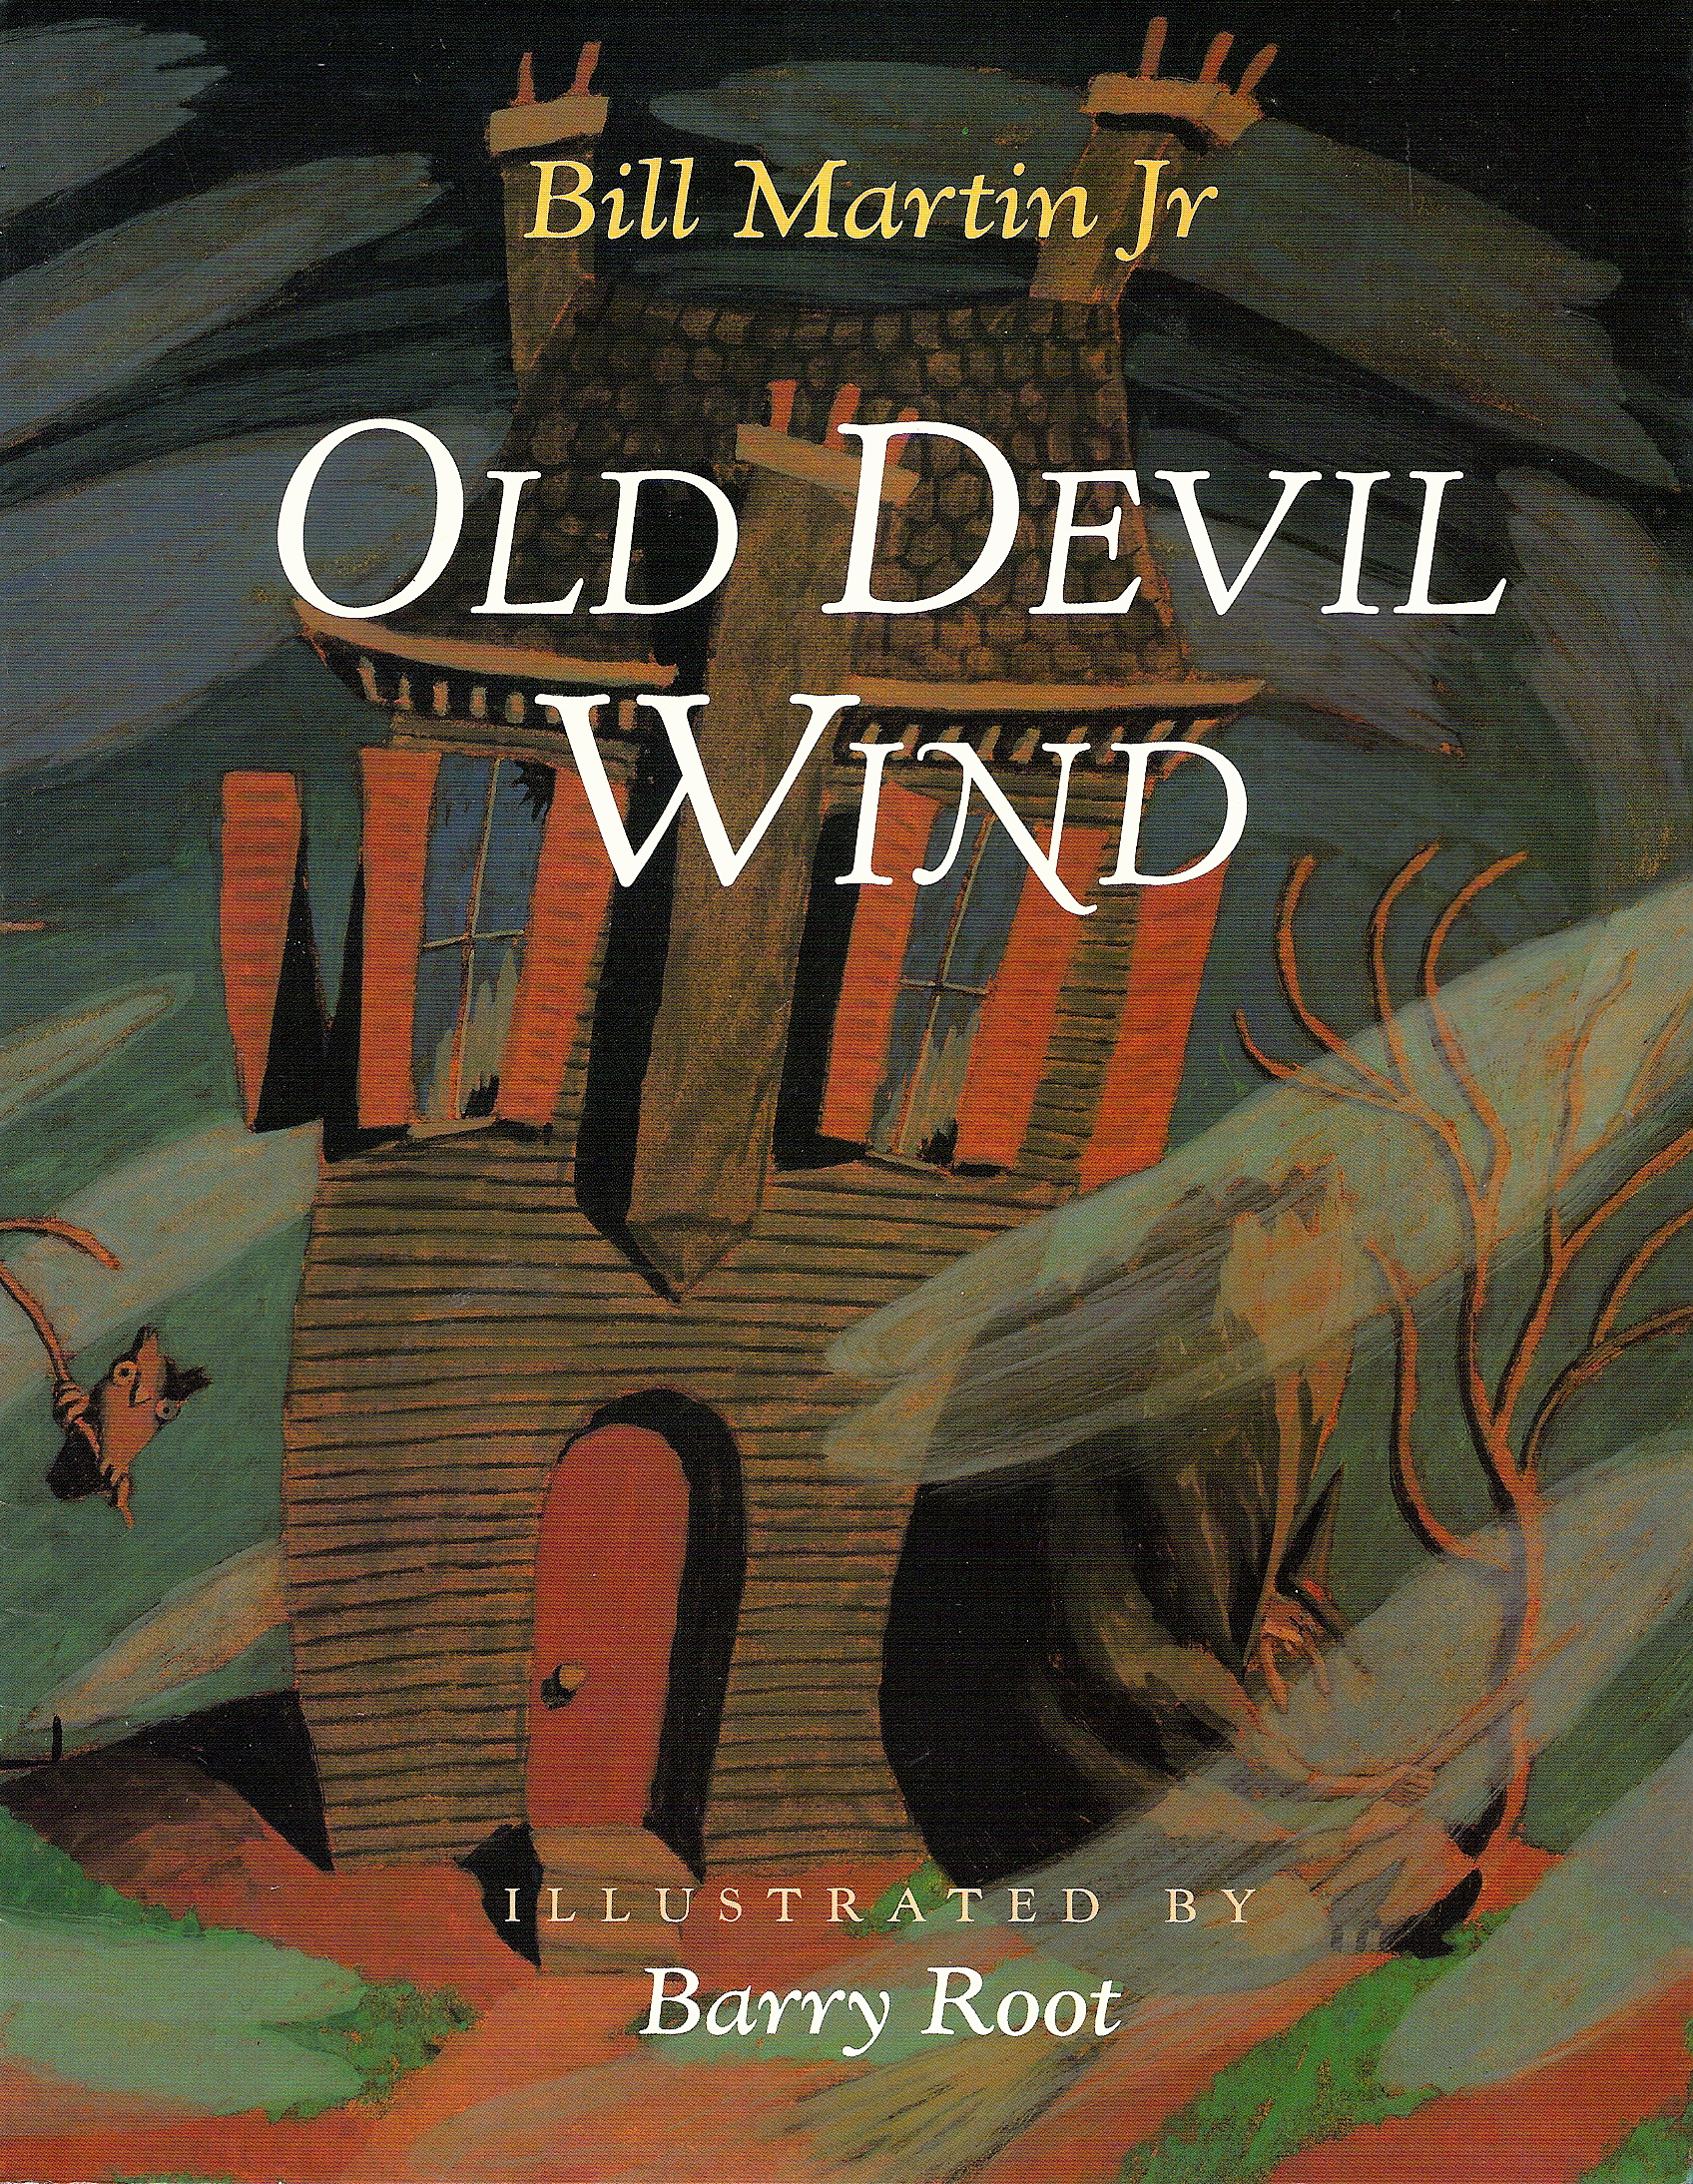 Old Devil Wind cov.jpg